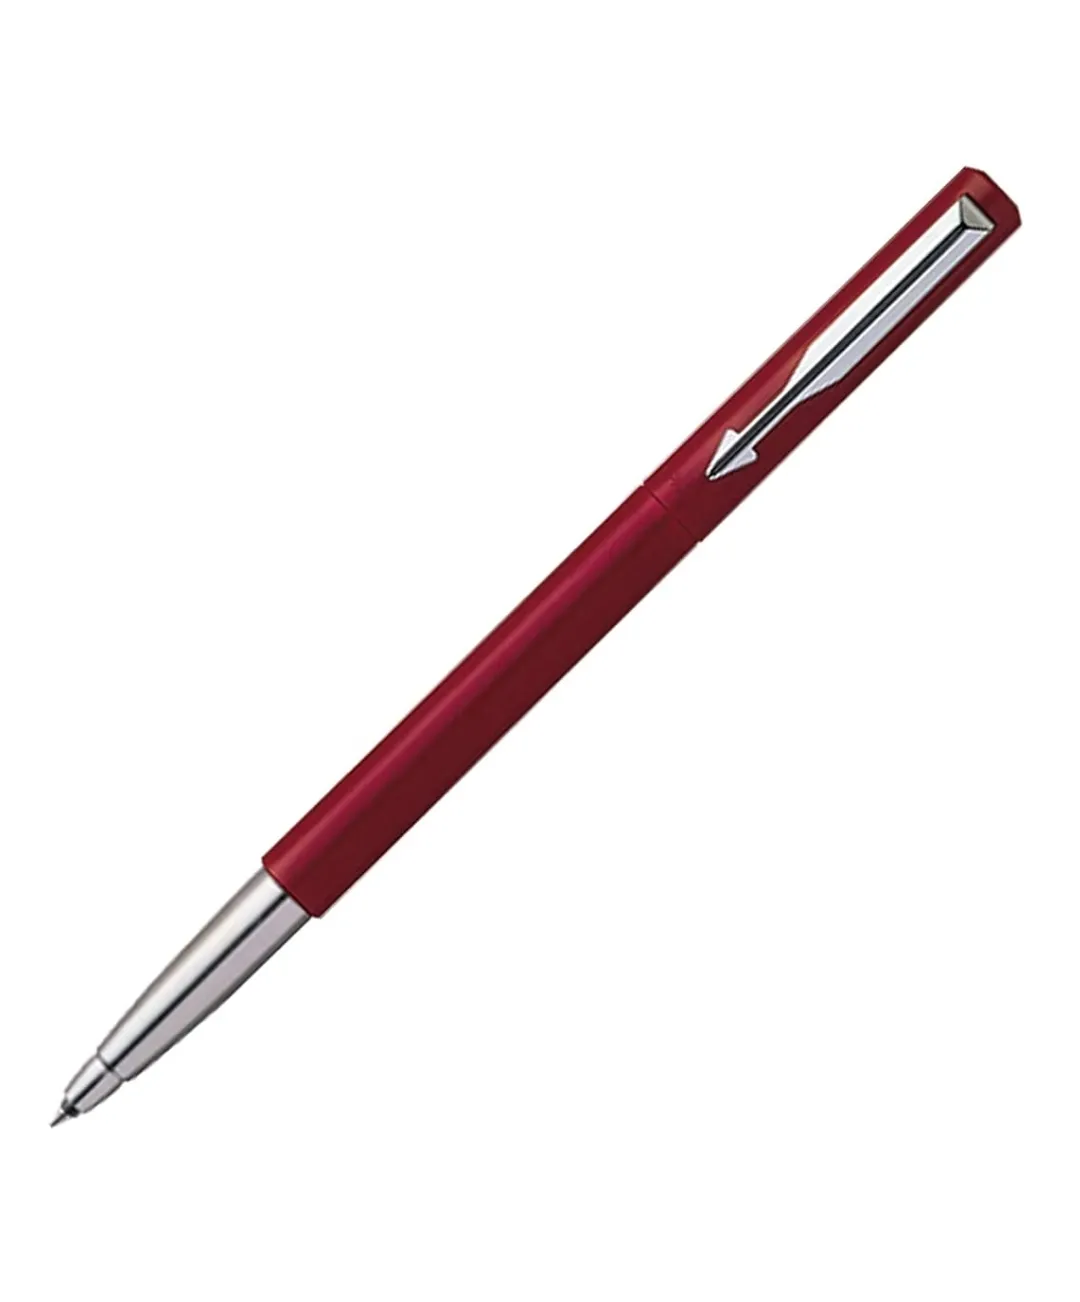 Parker Vector Standard Chrome Trim Roller Ball Pen (Pack of 1) Red Body